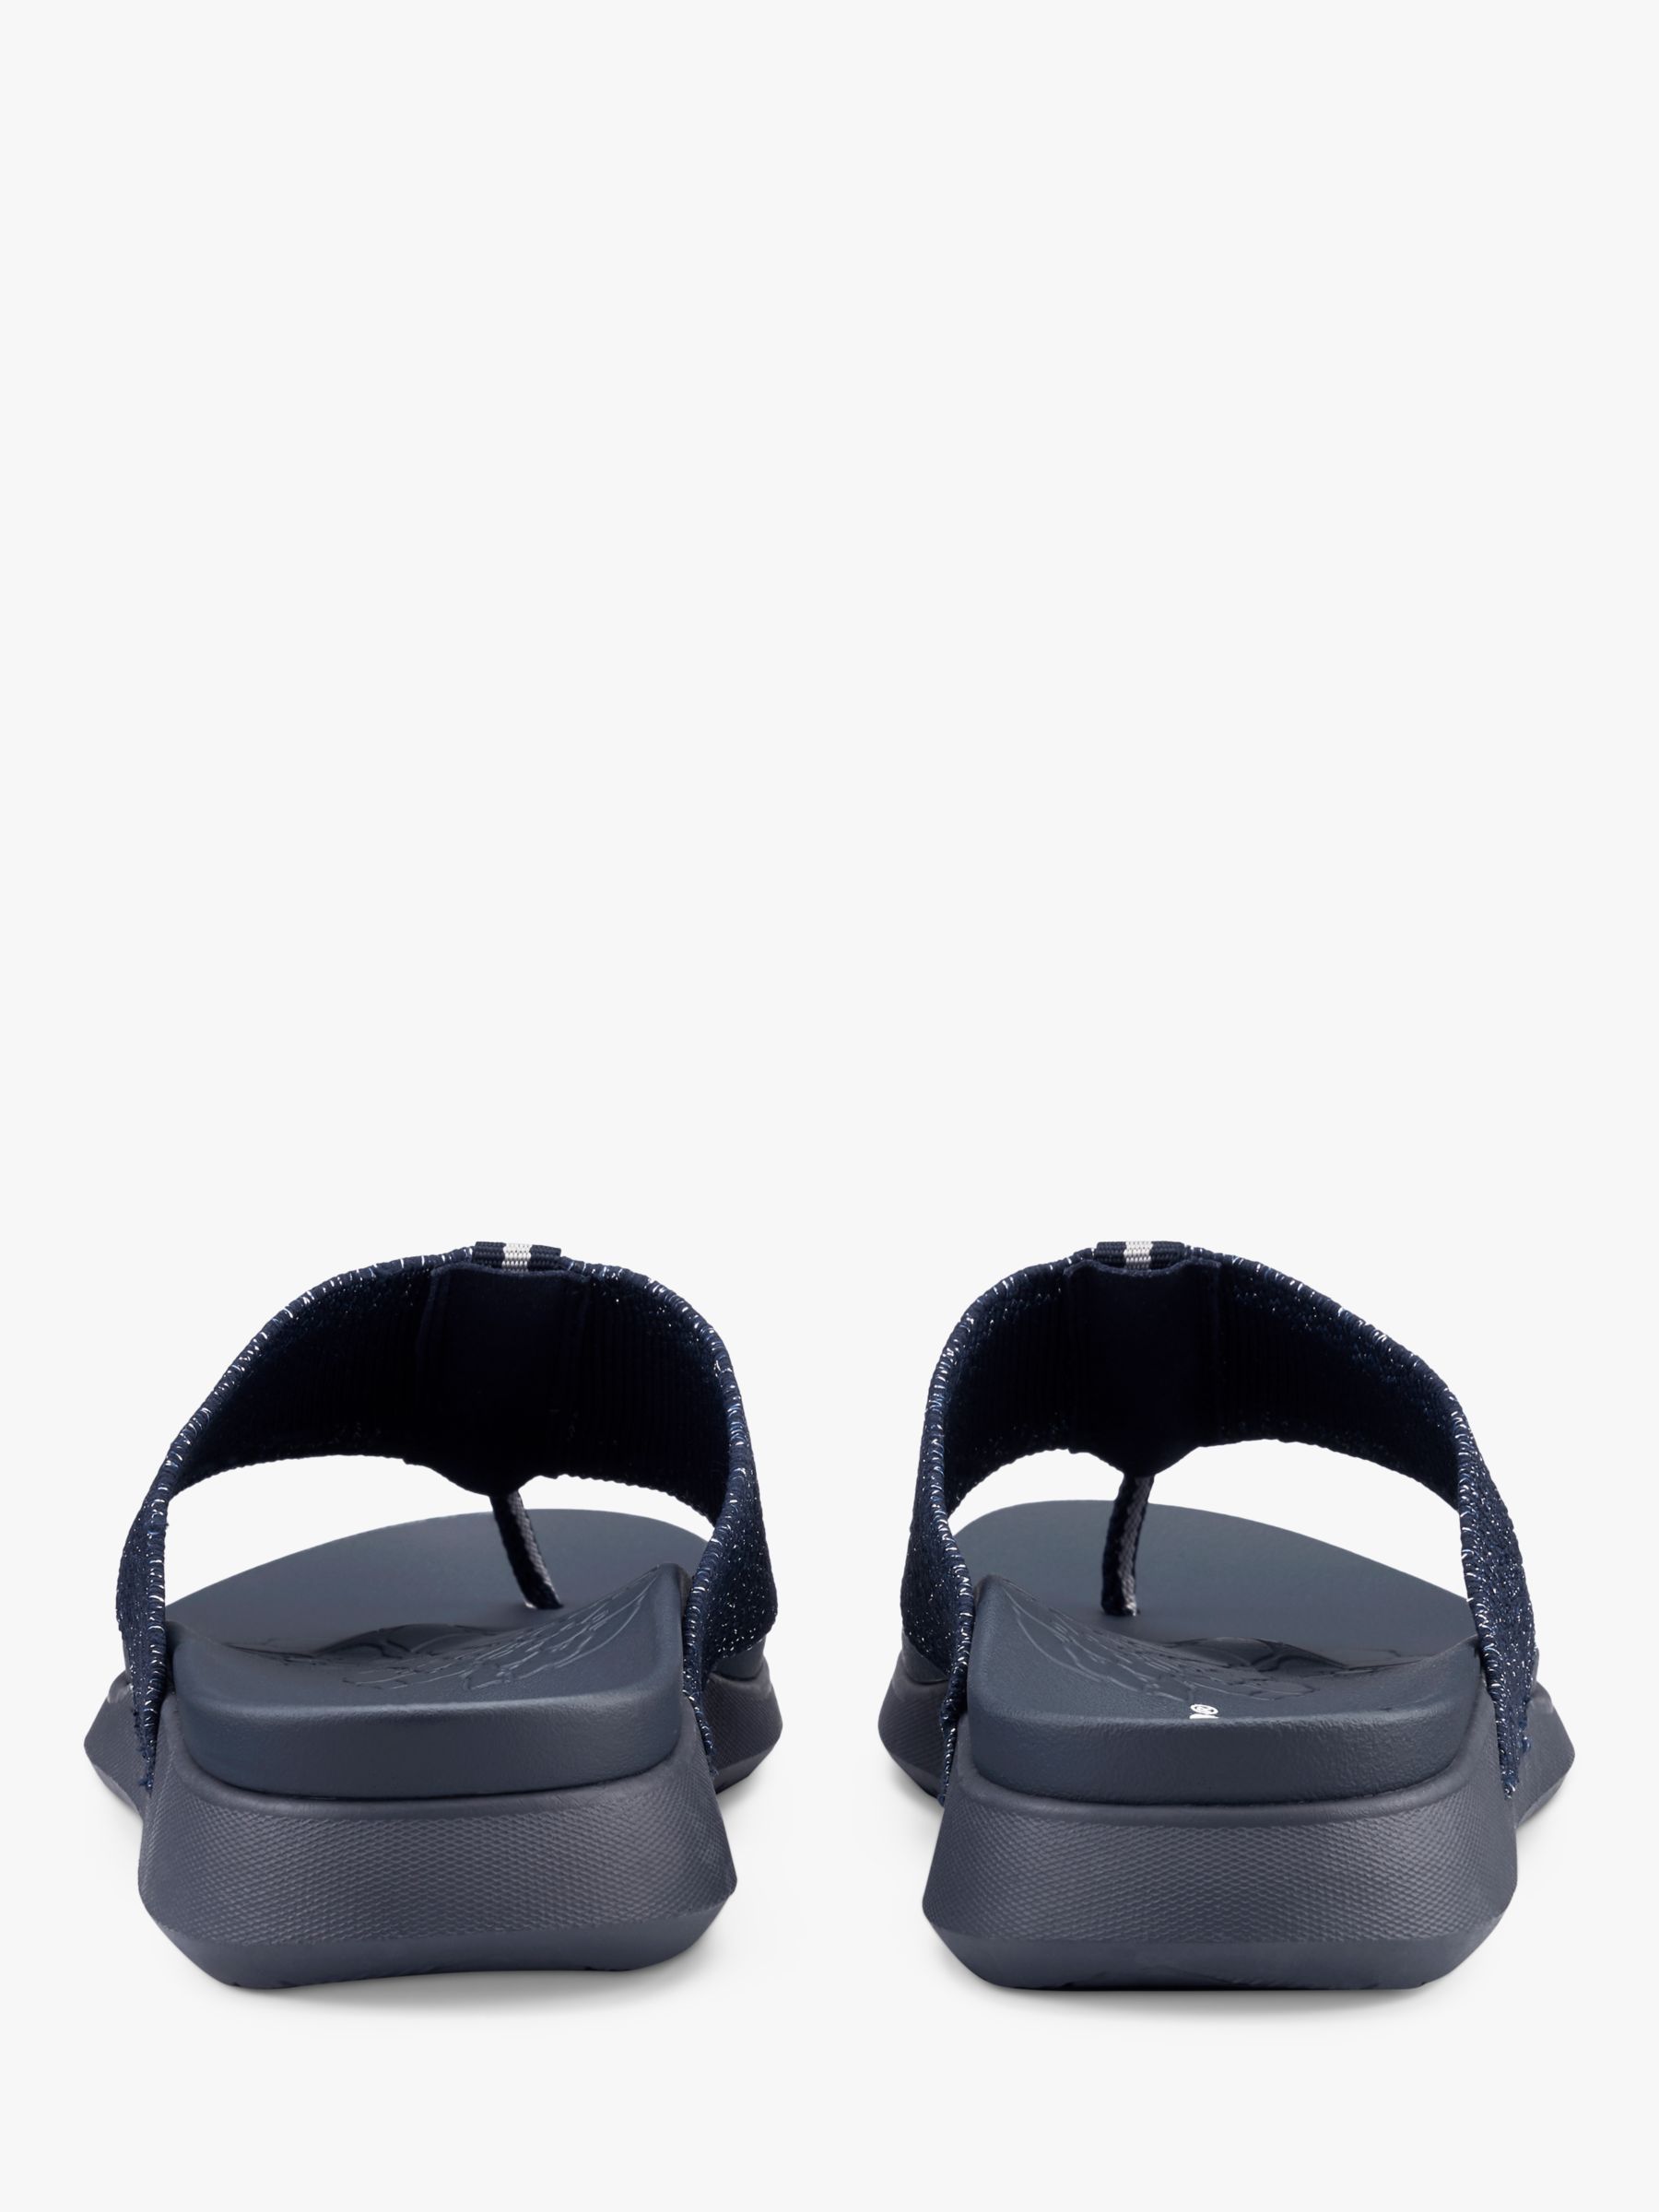 Buy Hotter Kelly Adjustable Sandals Online at johnlewis.com